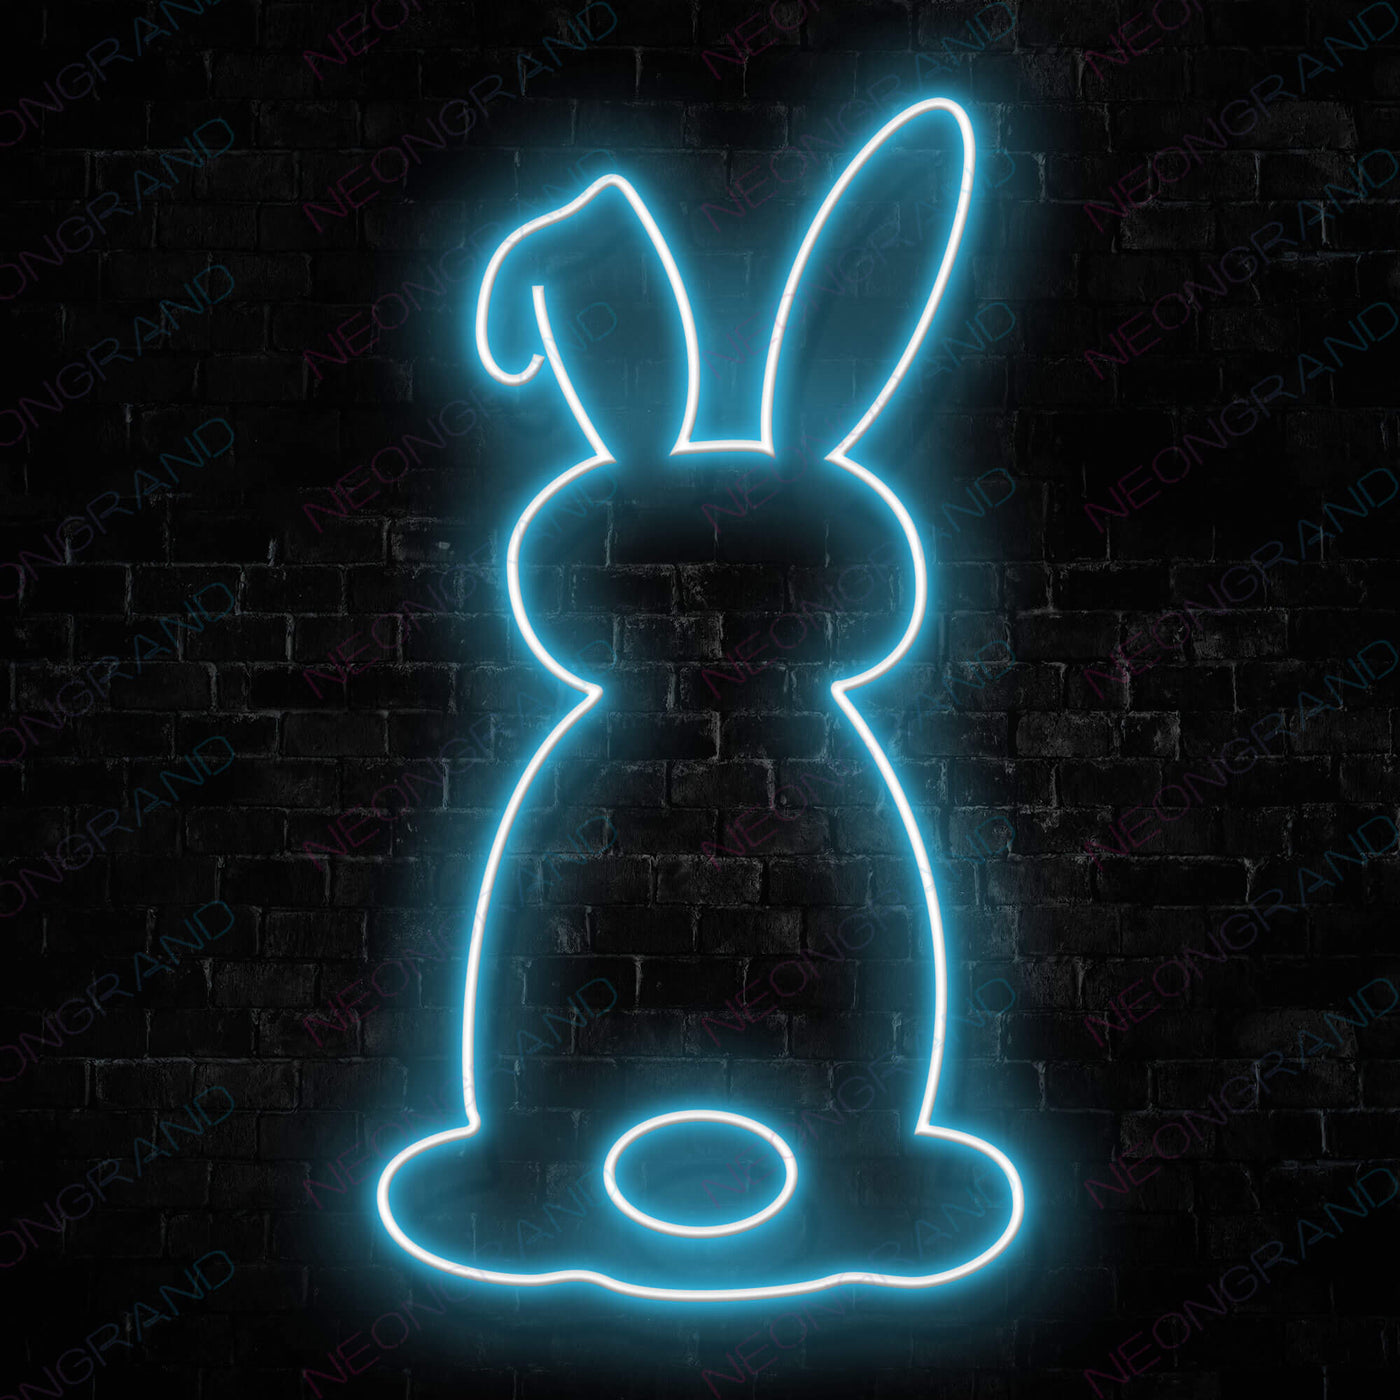 Rabbit Neon Sign Animal Led Light light blue